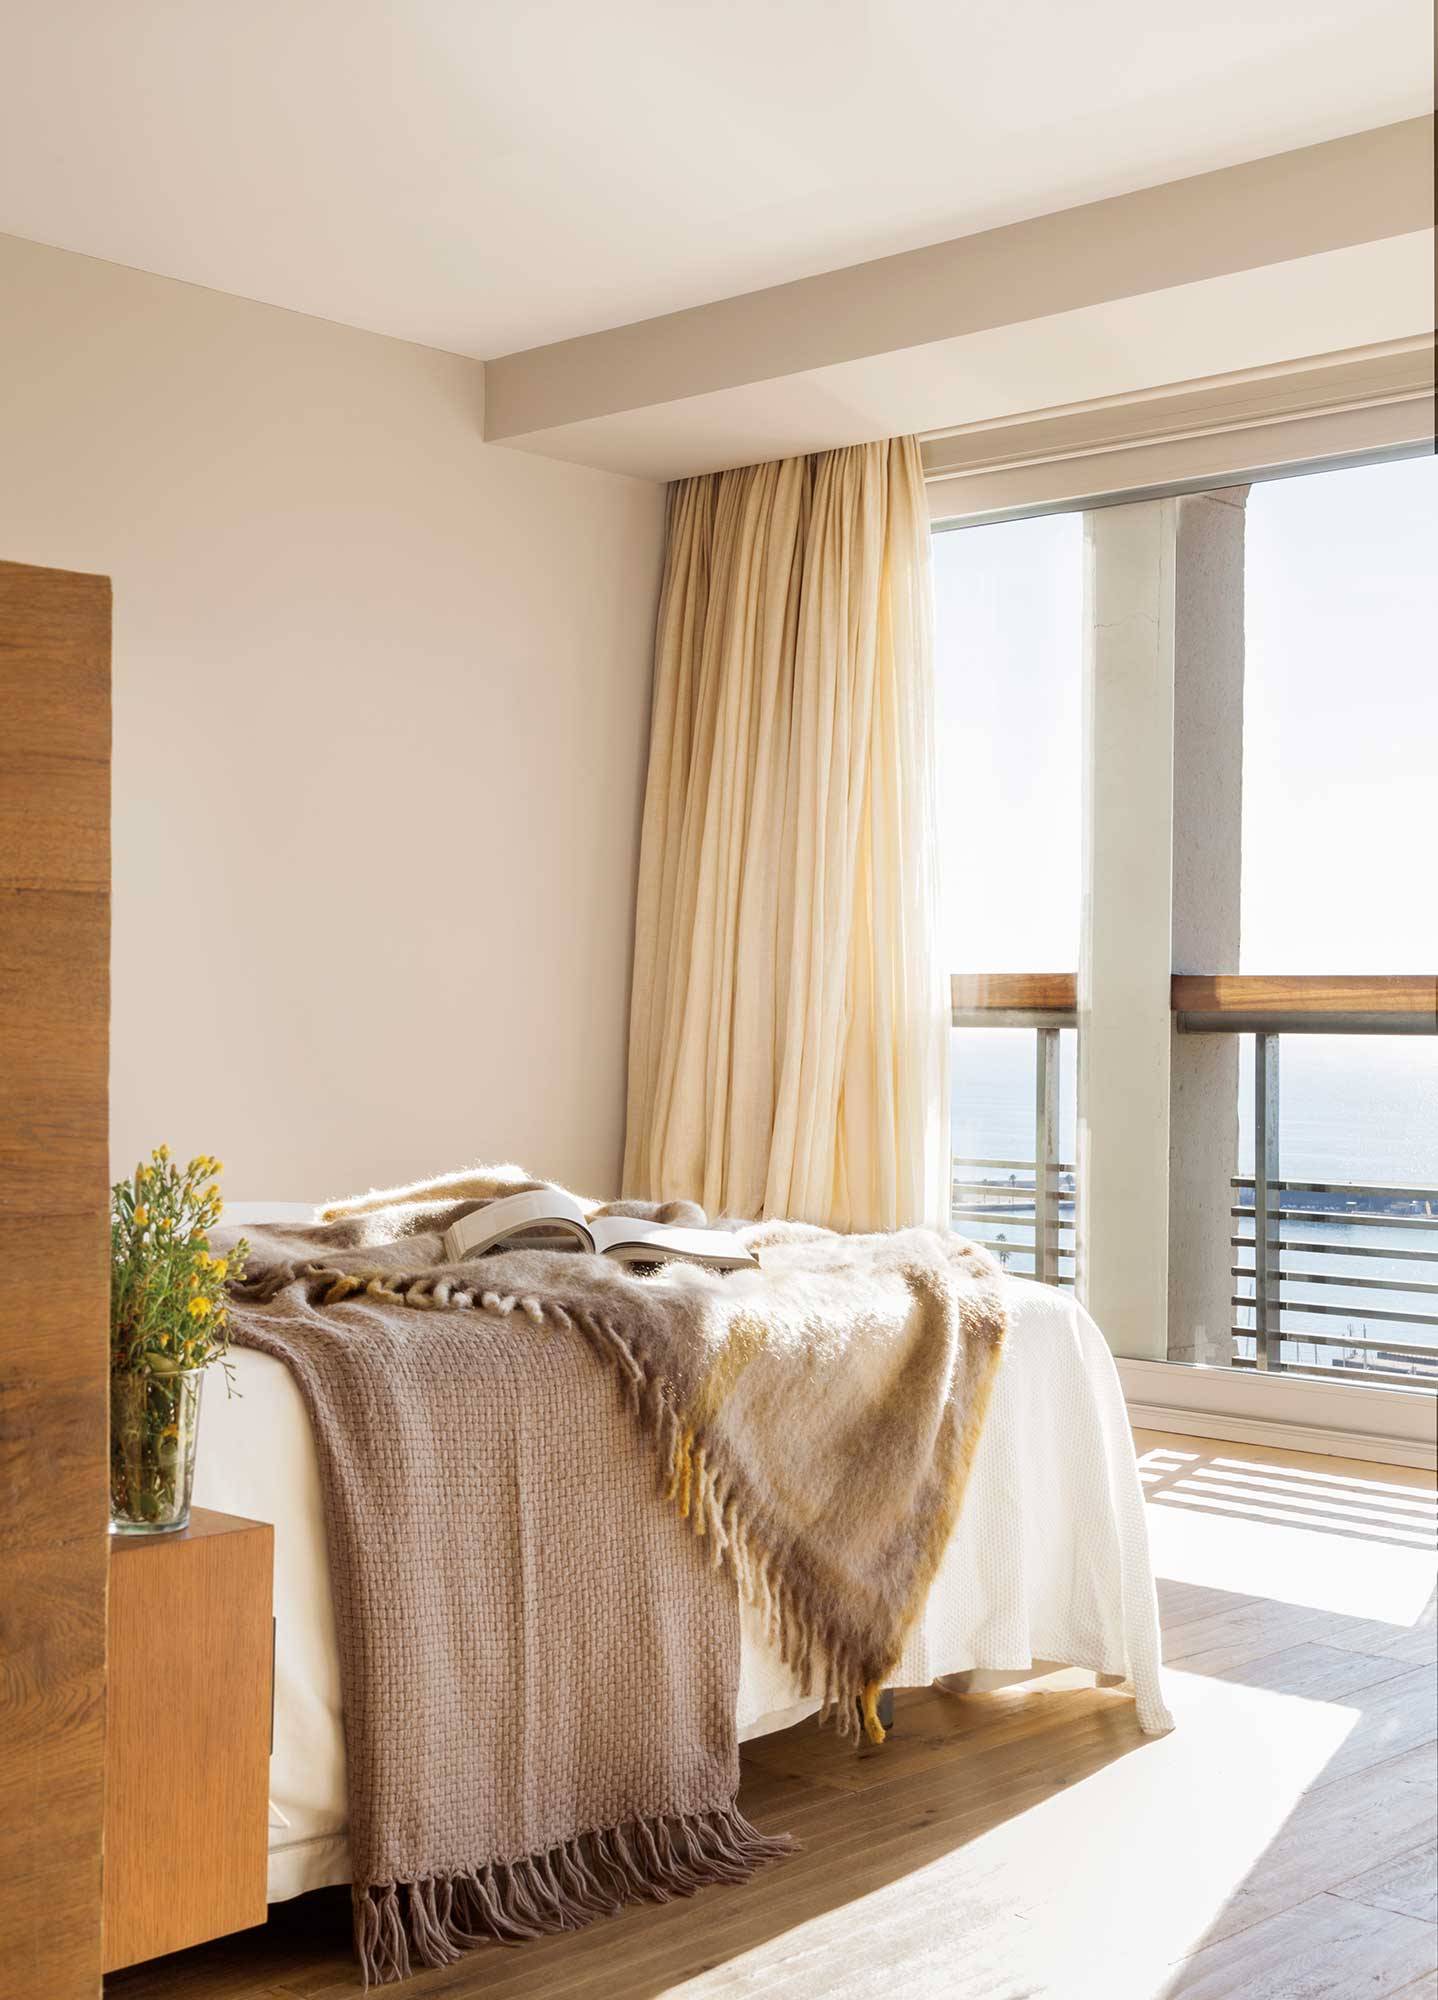 Dormitorio con cortinas que salen del techo de color beige. 